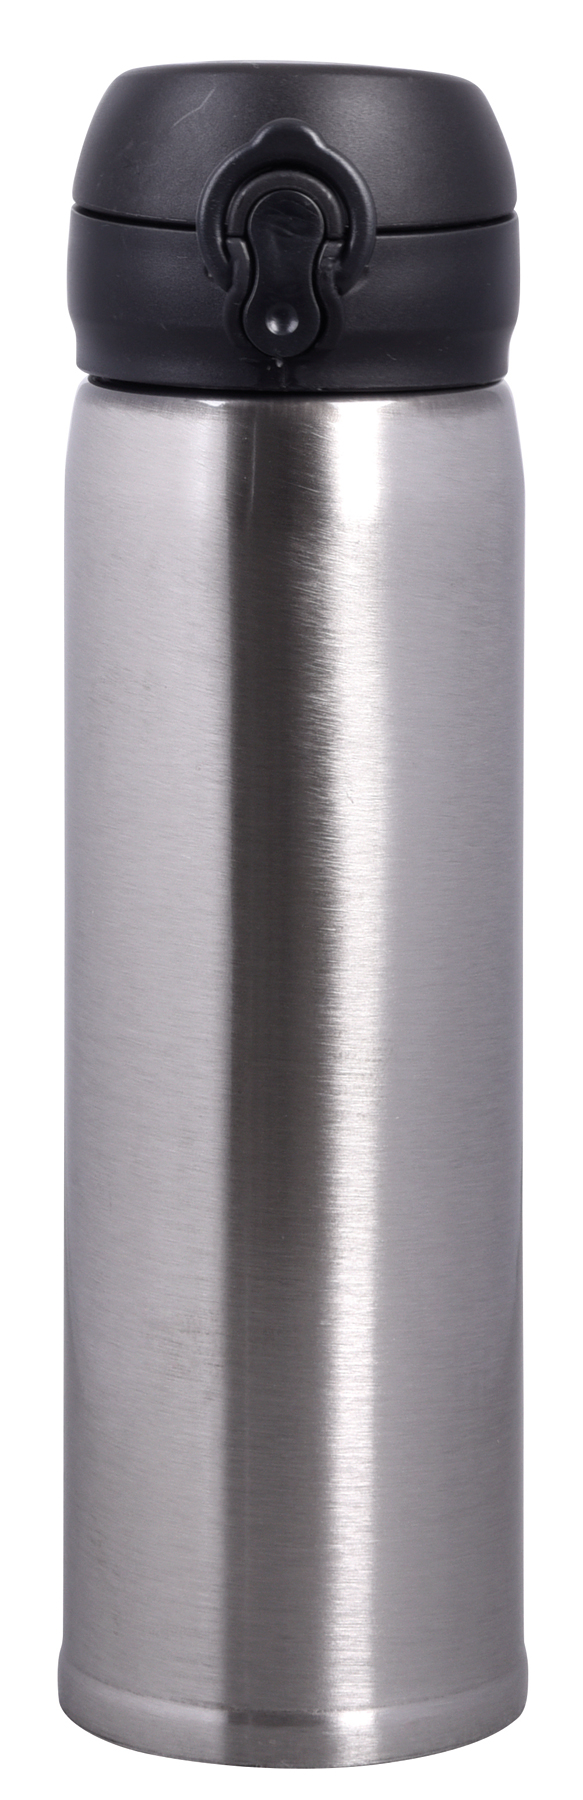 Vakuum-Trinkflasche OOLONG - Silber